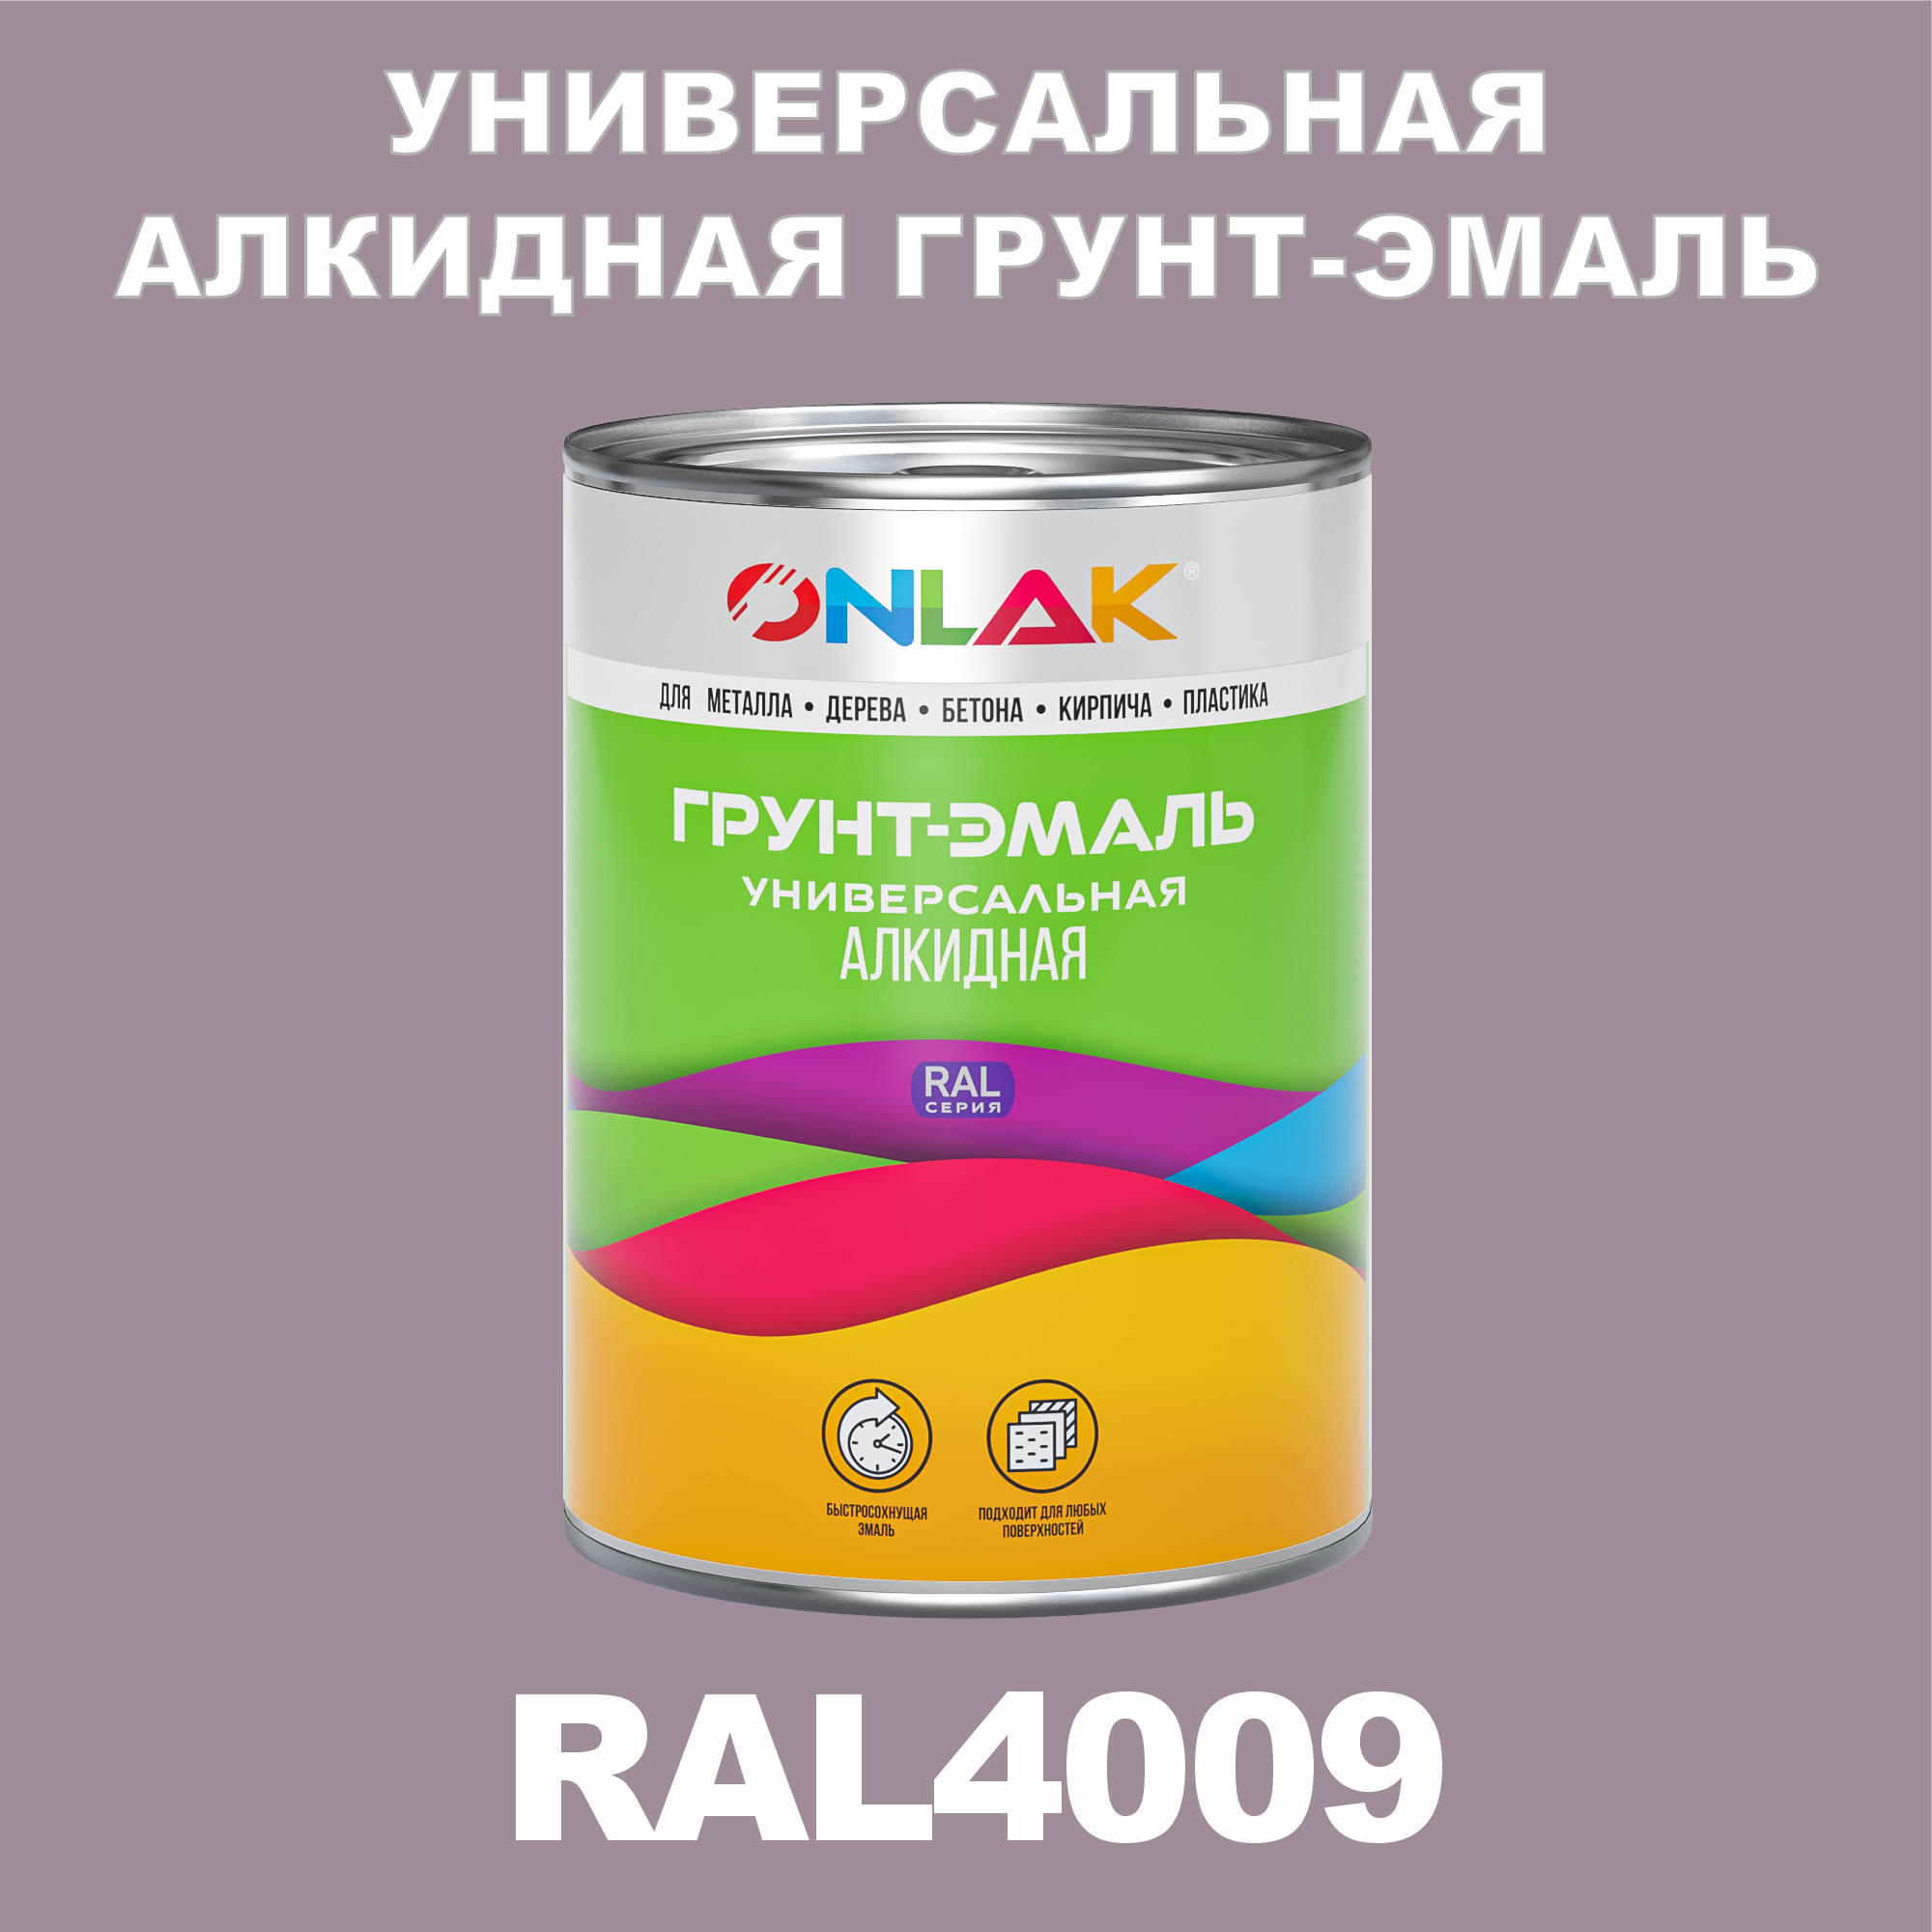 Грунт-эмаль ONLAK 1К RAL4009 антикоррозионная алкидная по металлу по ржавчине 1 кг грунт эмаль престиж по ржавчине алкидная зеленая 1 9 кг